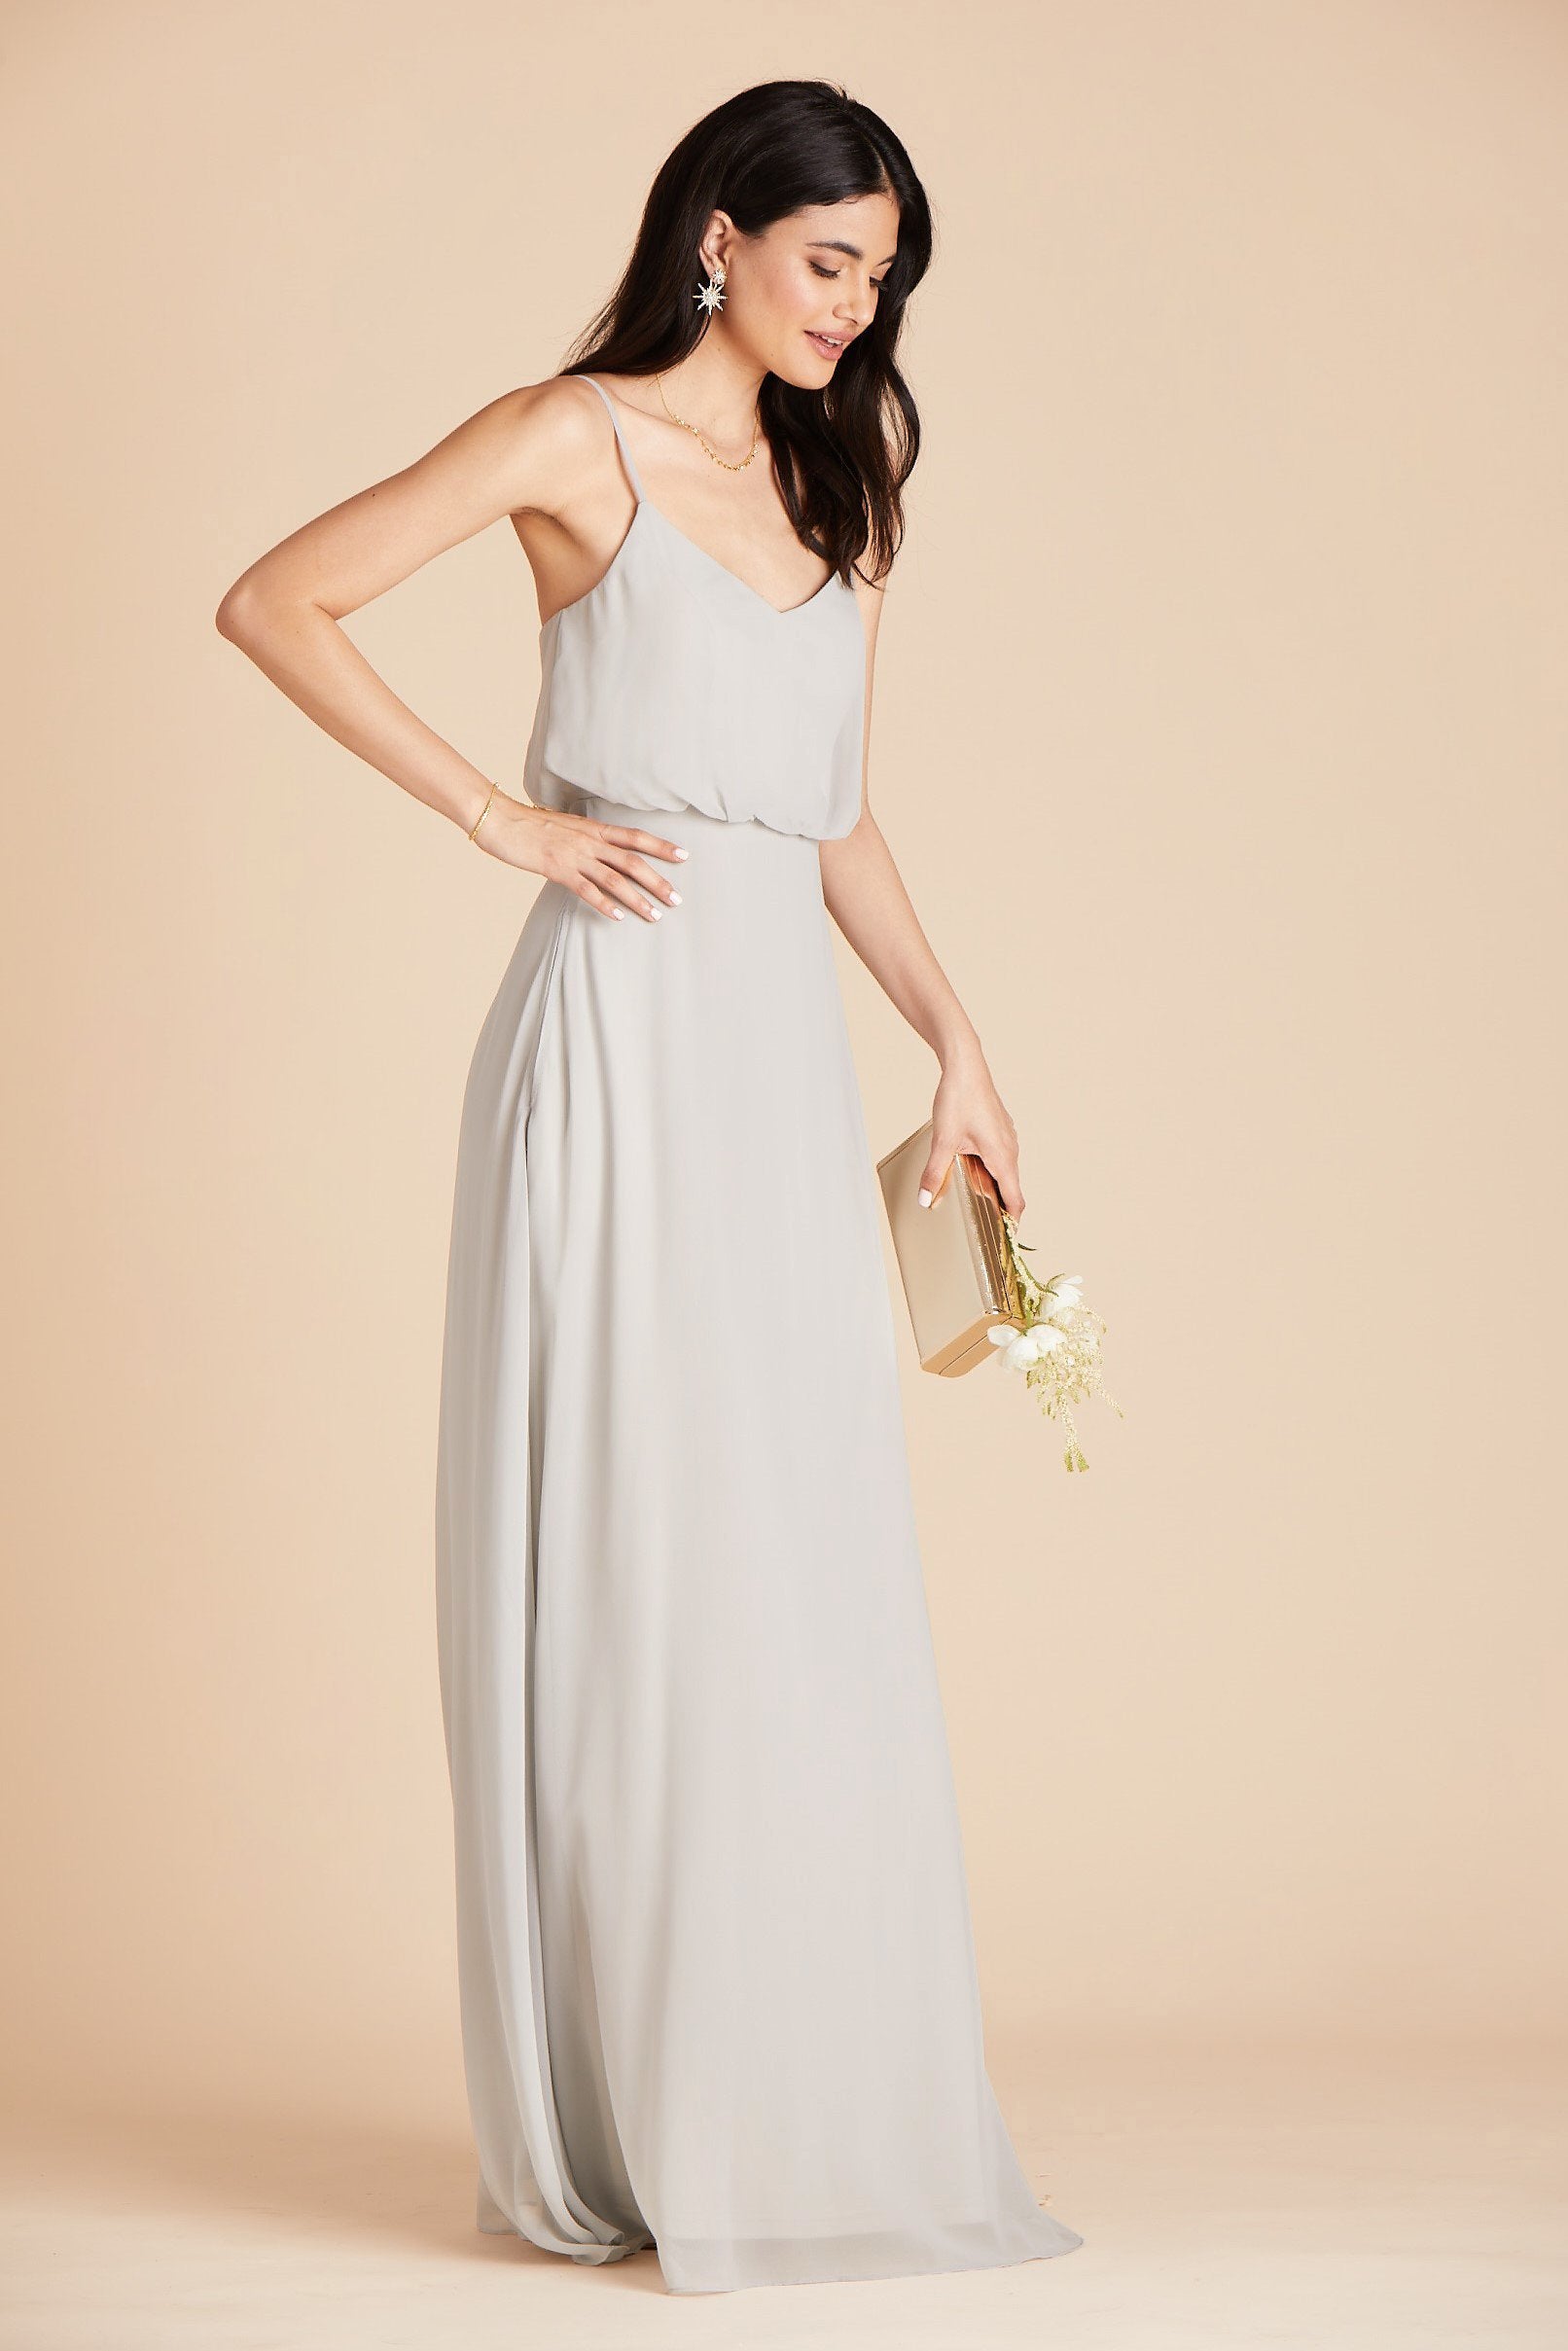 Gwennie bridesmaid dress in dove gray chiffon by Birdy Grey, side view